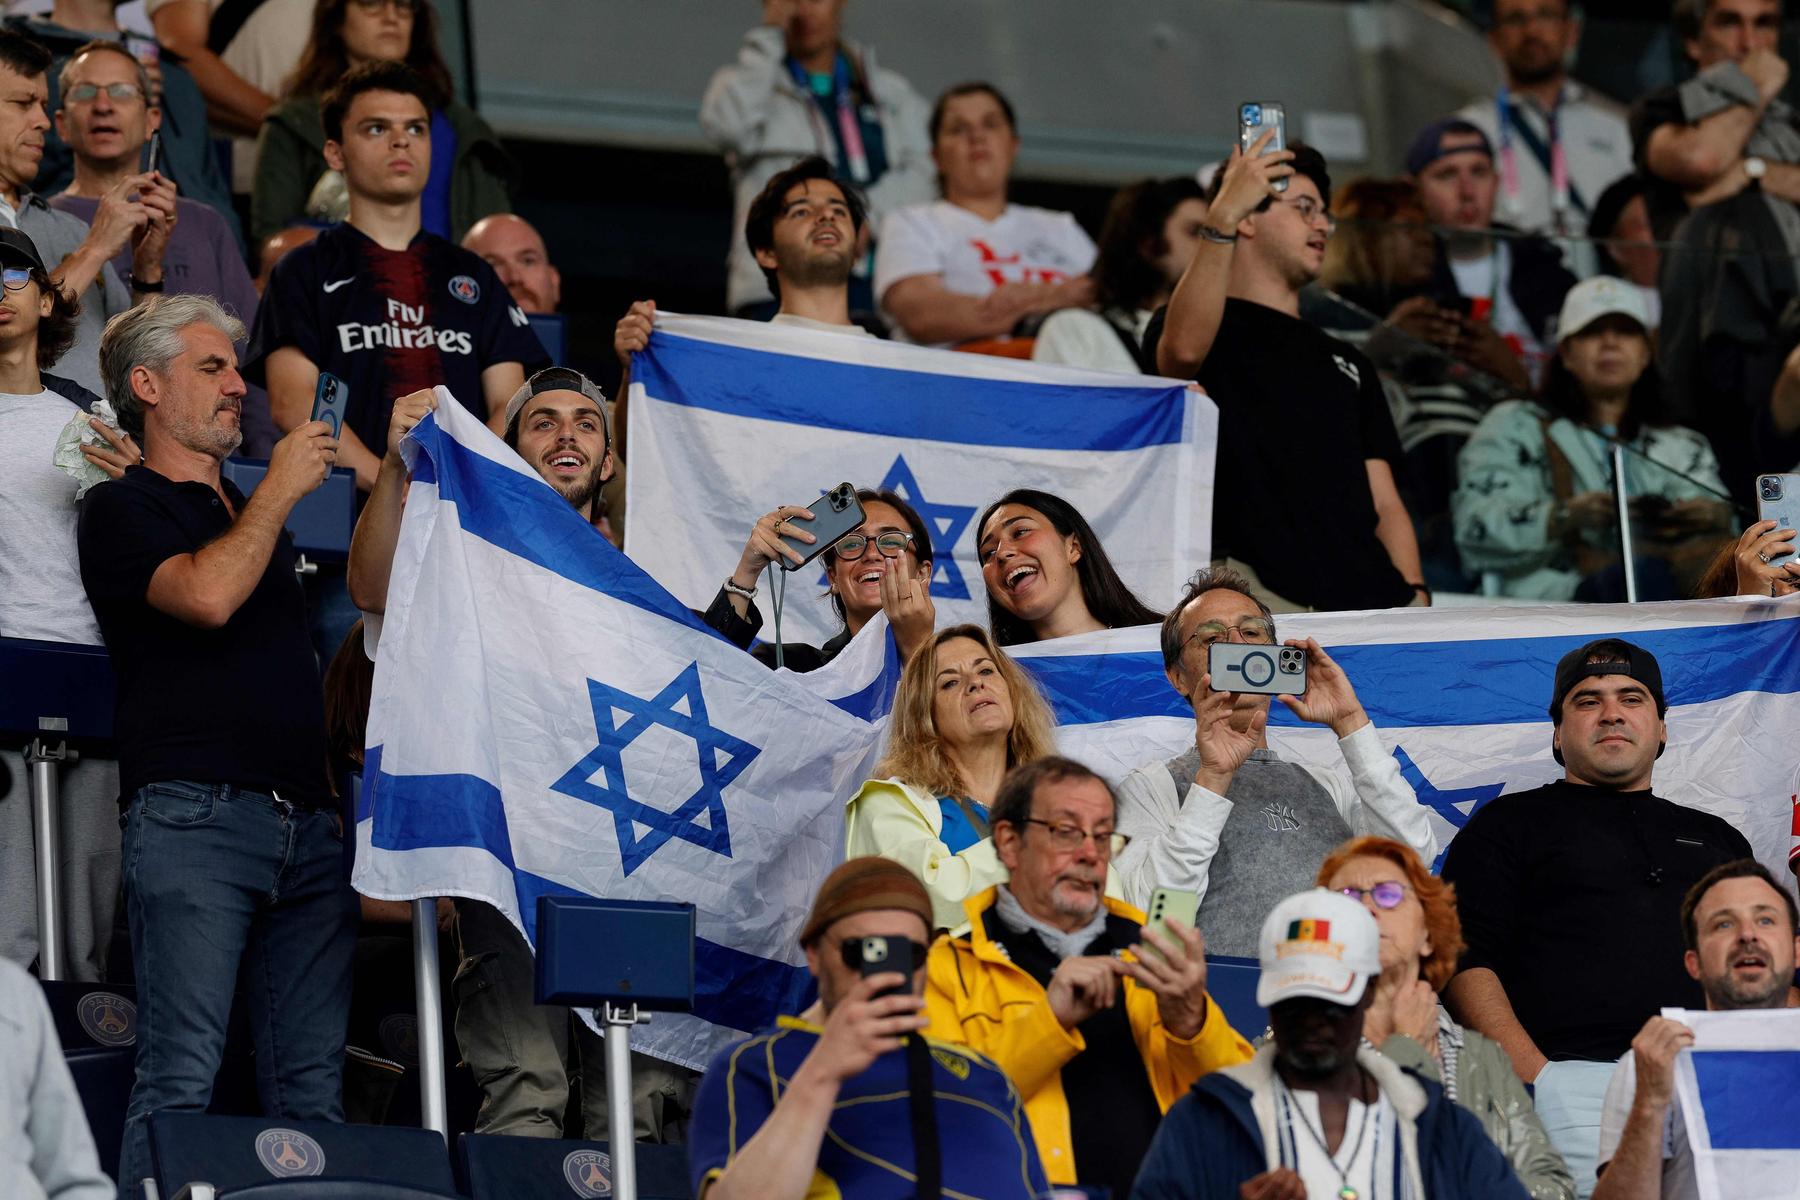 Hinweise auf Bedrohungen für Israels Sportler und Fans